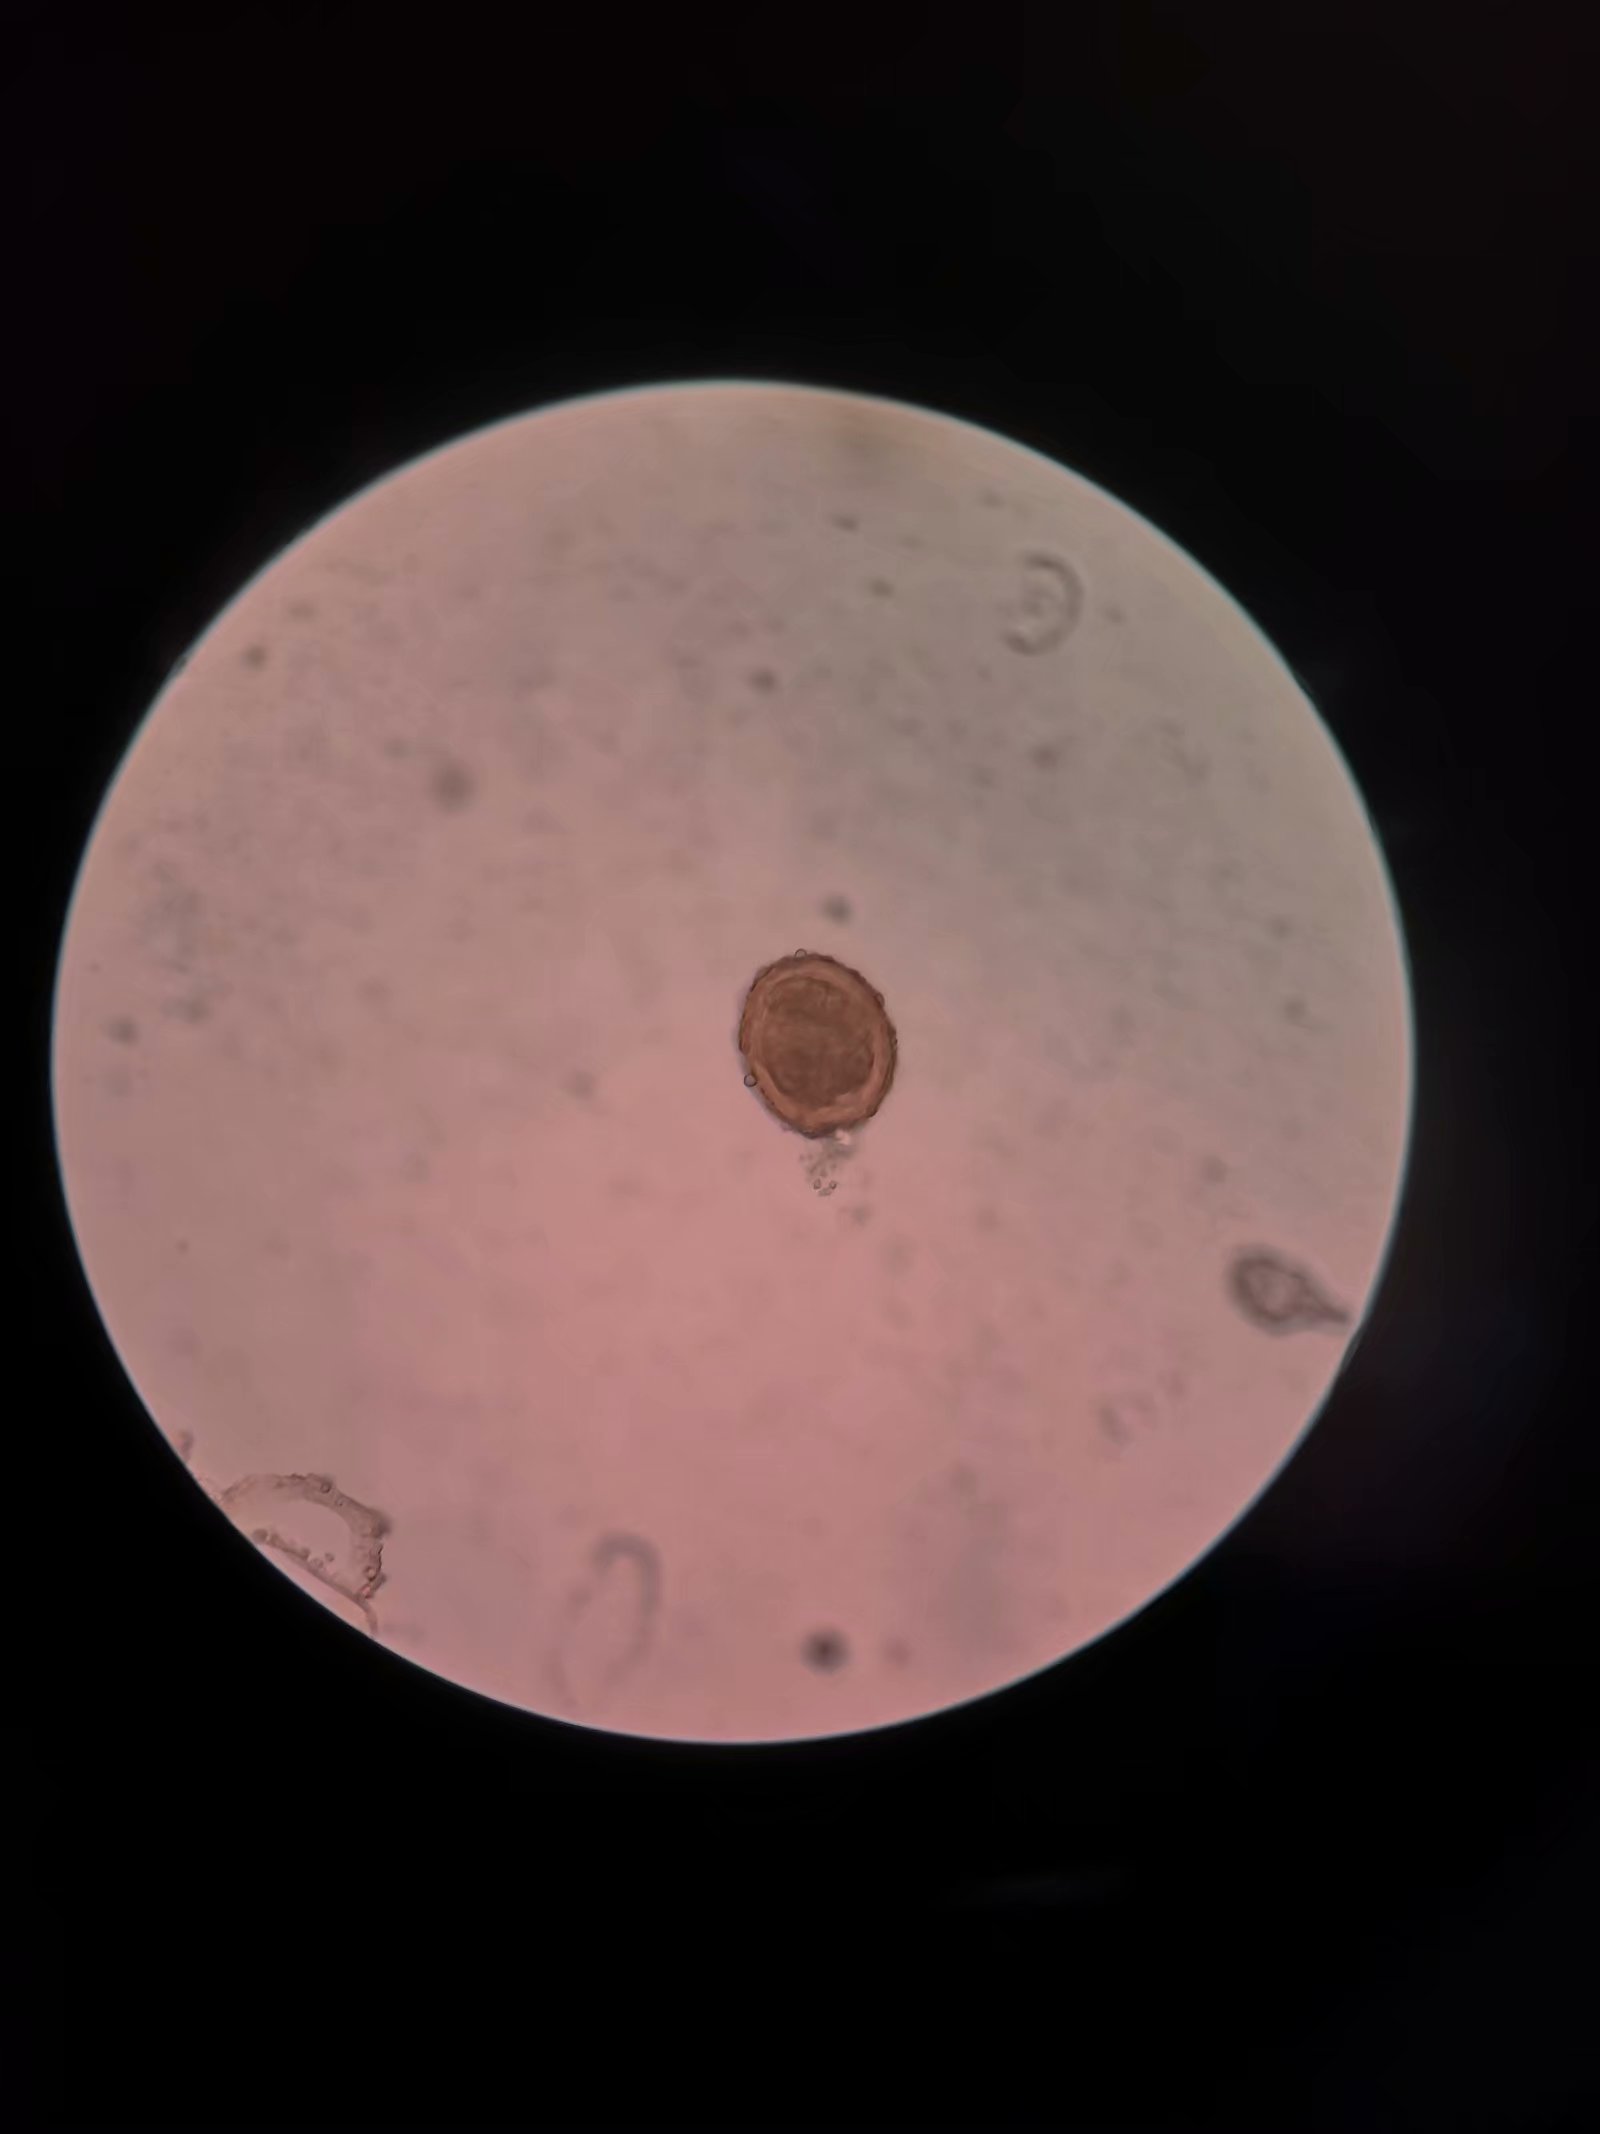 显微镜下的蛔虫卵图片-商业图片-正版原创图片下载购买-VEER图片库